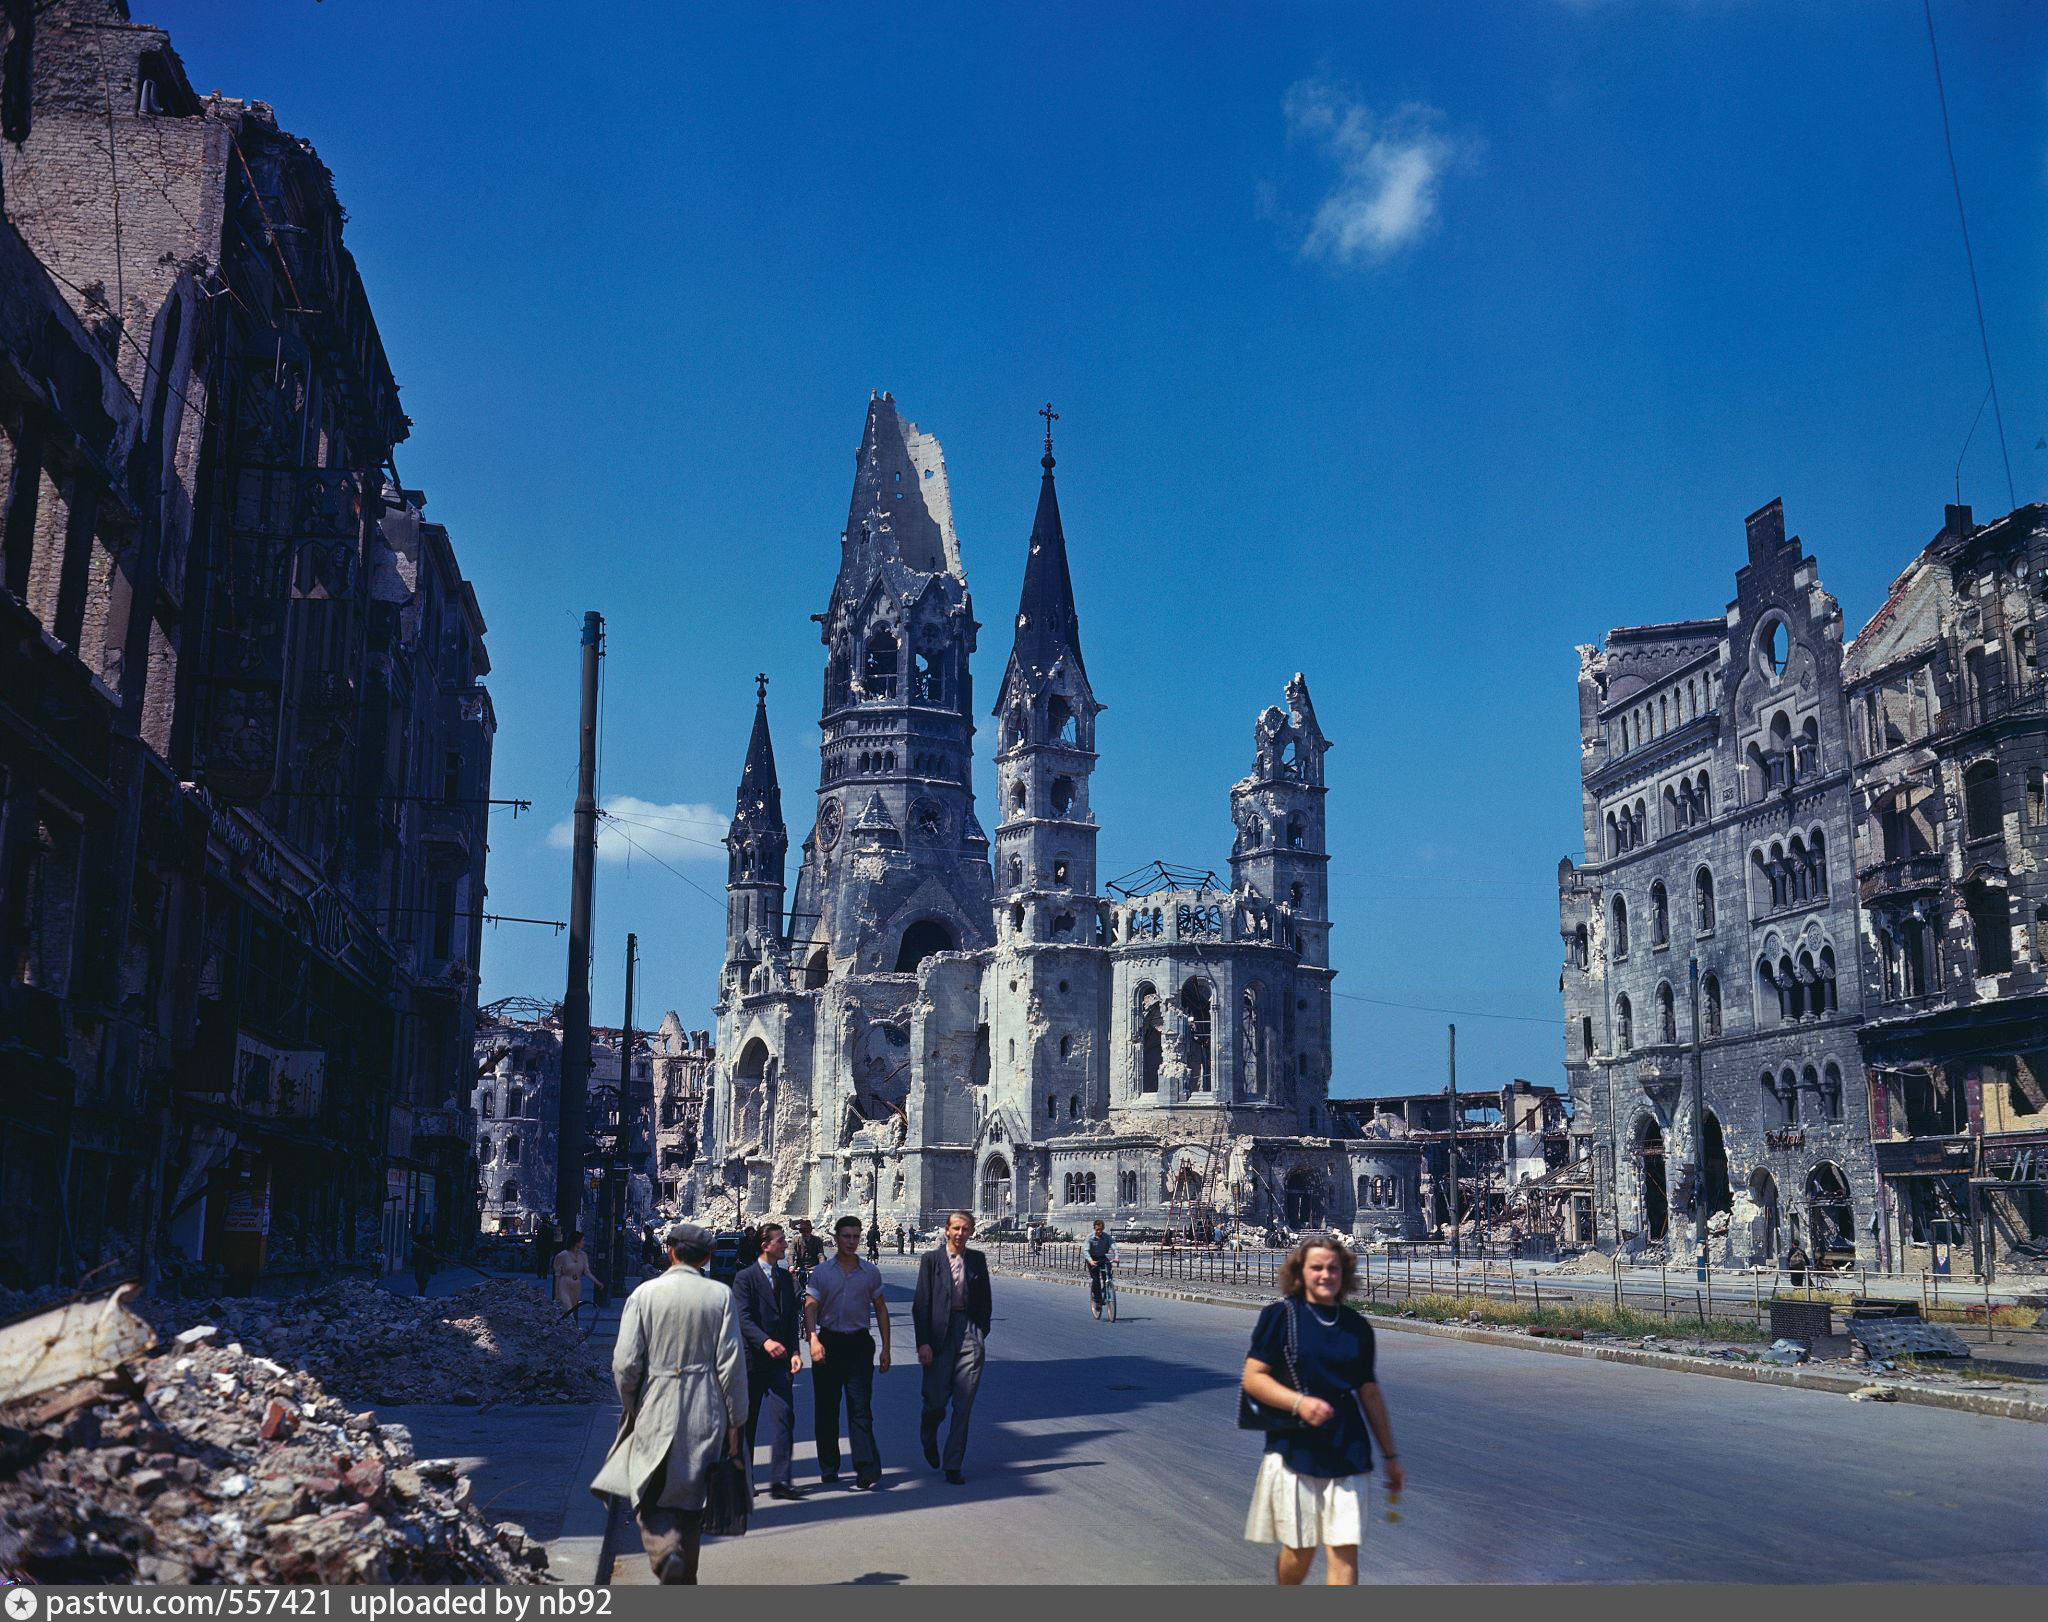 Разрушенный Берлин 1945 в цвете